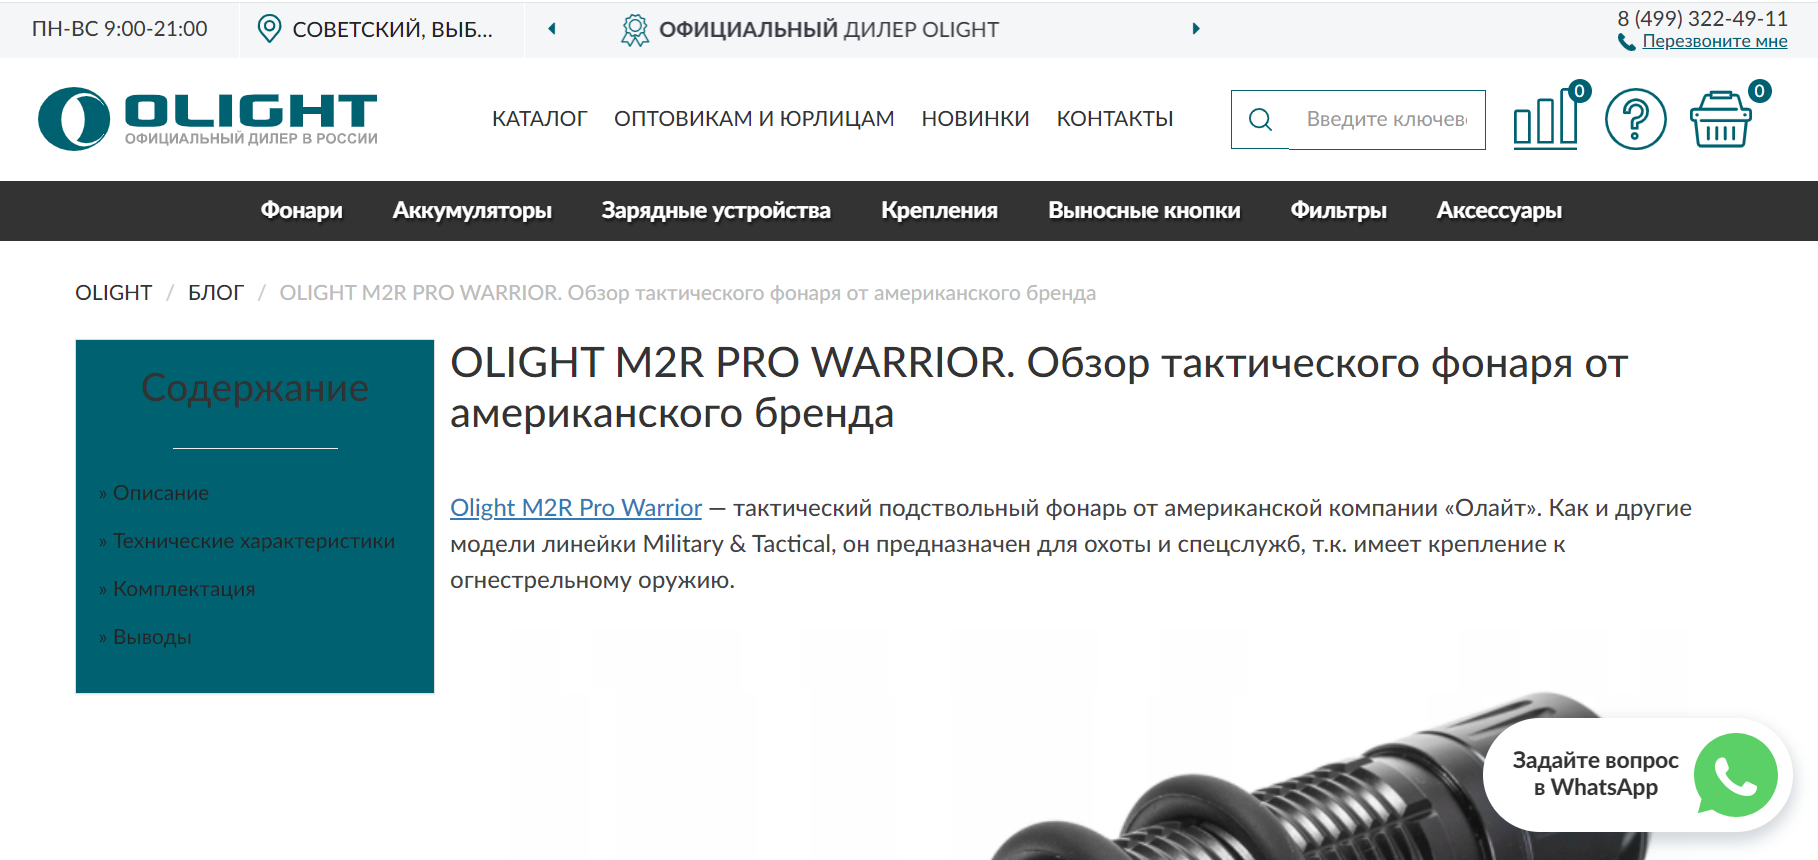 Olight M2R Pro Warrior. Обзор тактического фонаря от американского бренда